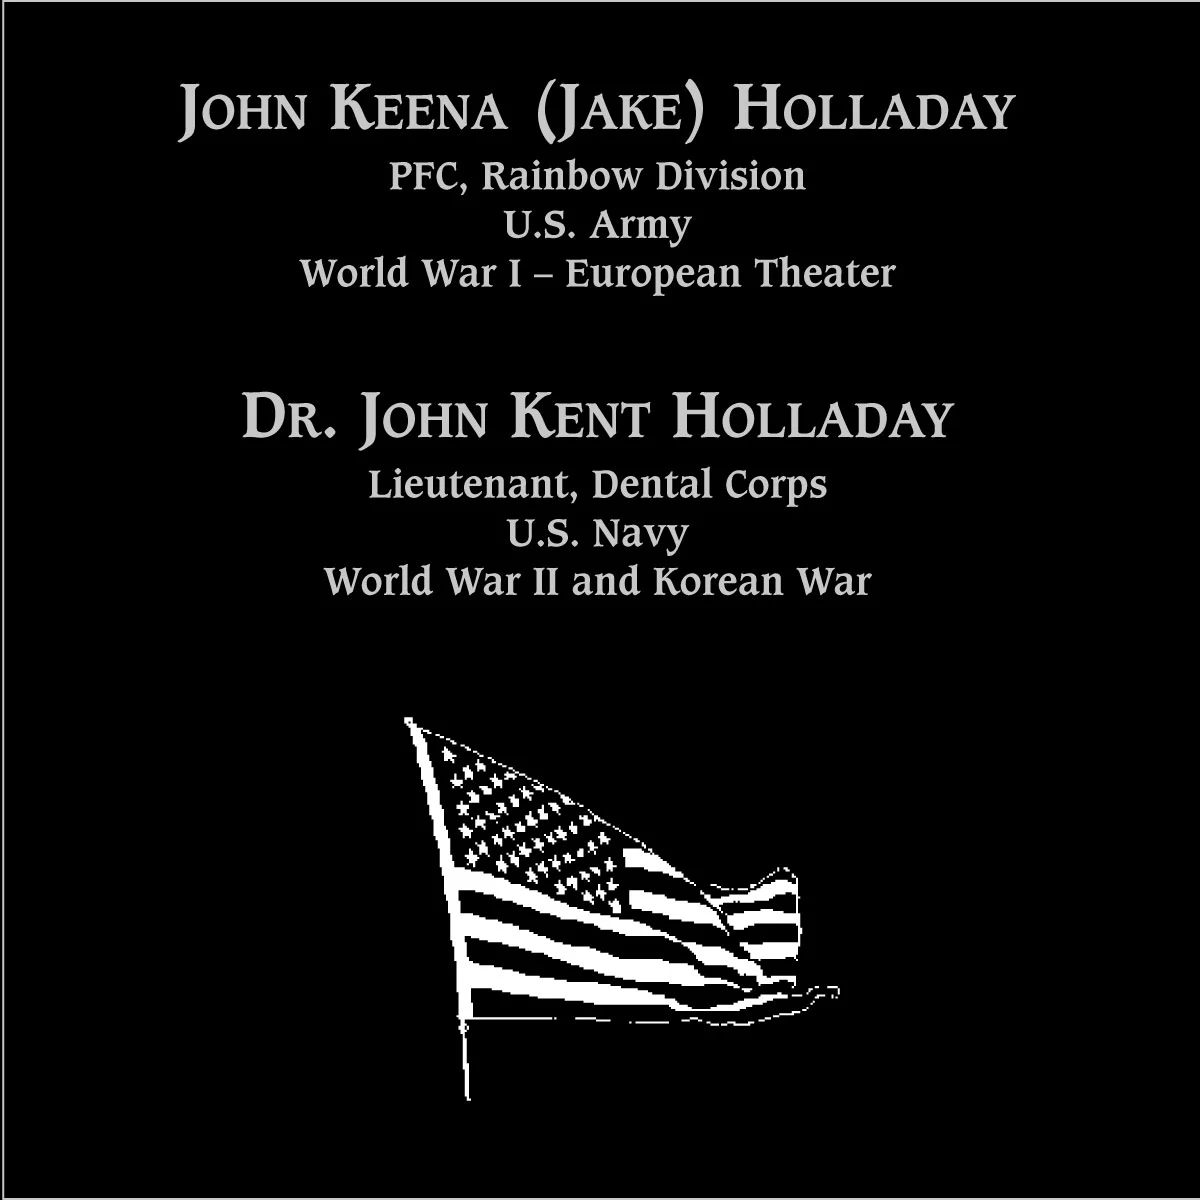 John Keena “Jake” Holladay